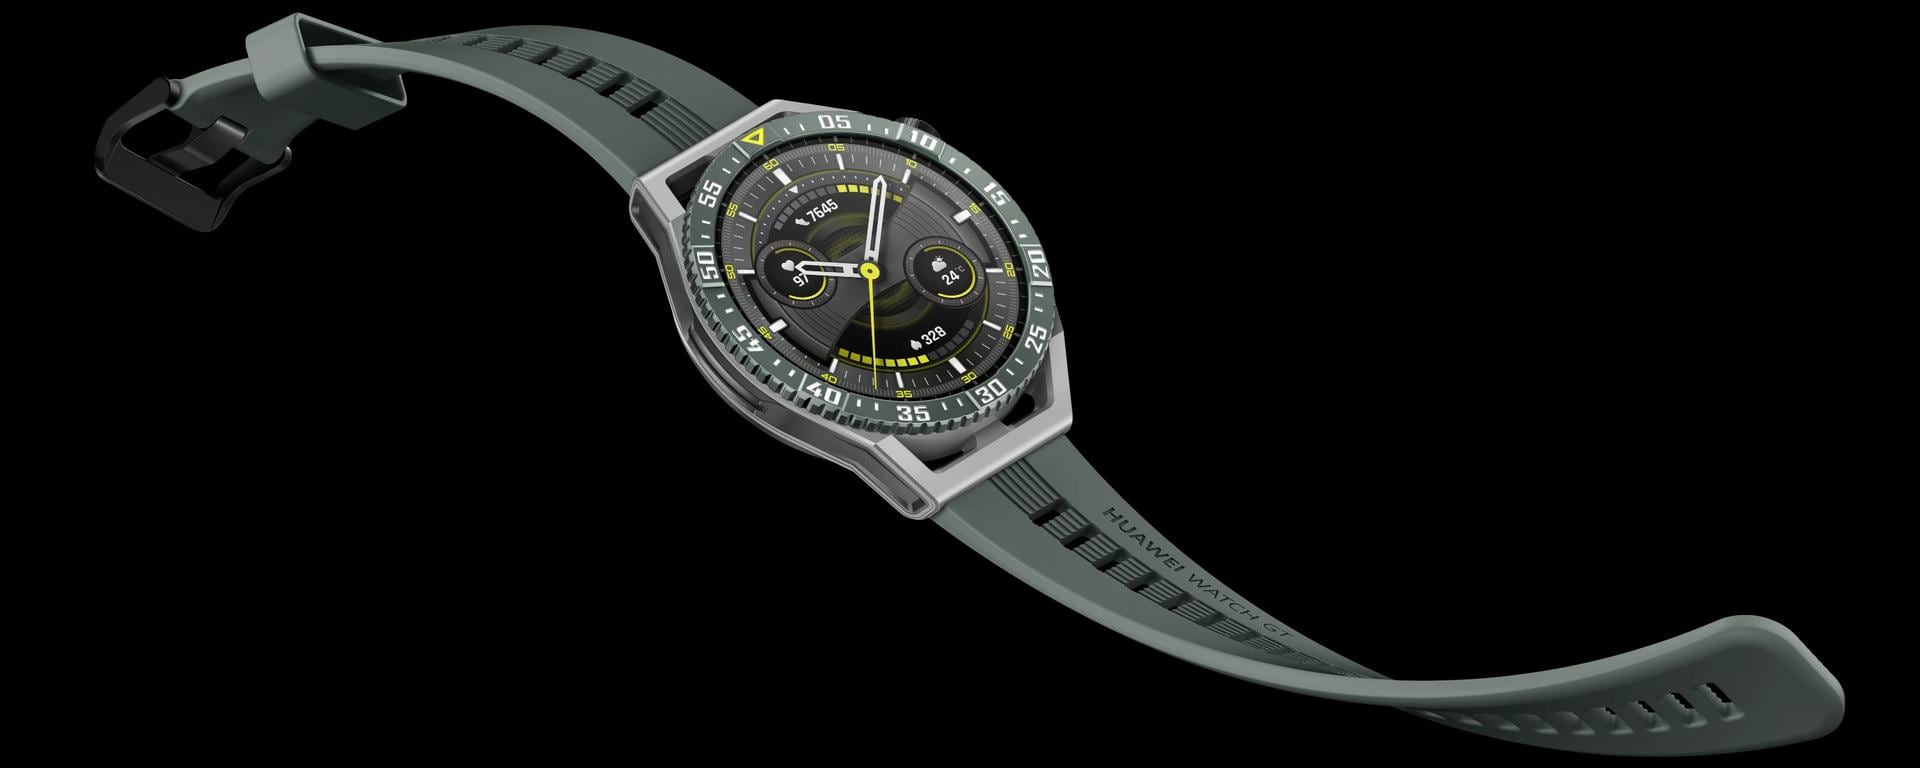 Huawei Watch GT3 SE, un reloj pensado para el deporte y que promete gran autonomía: todos los detalles | REVIEW